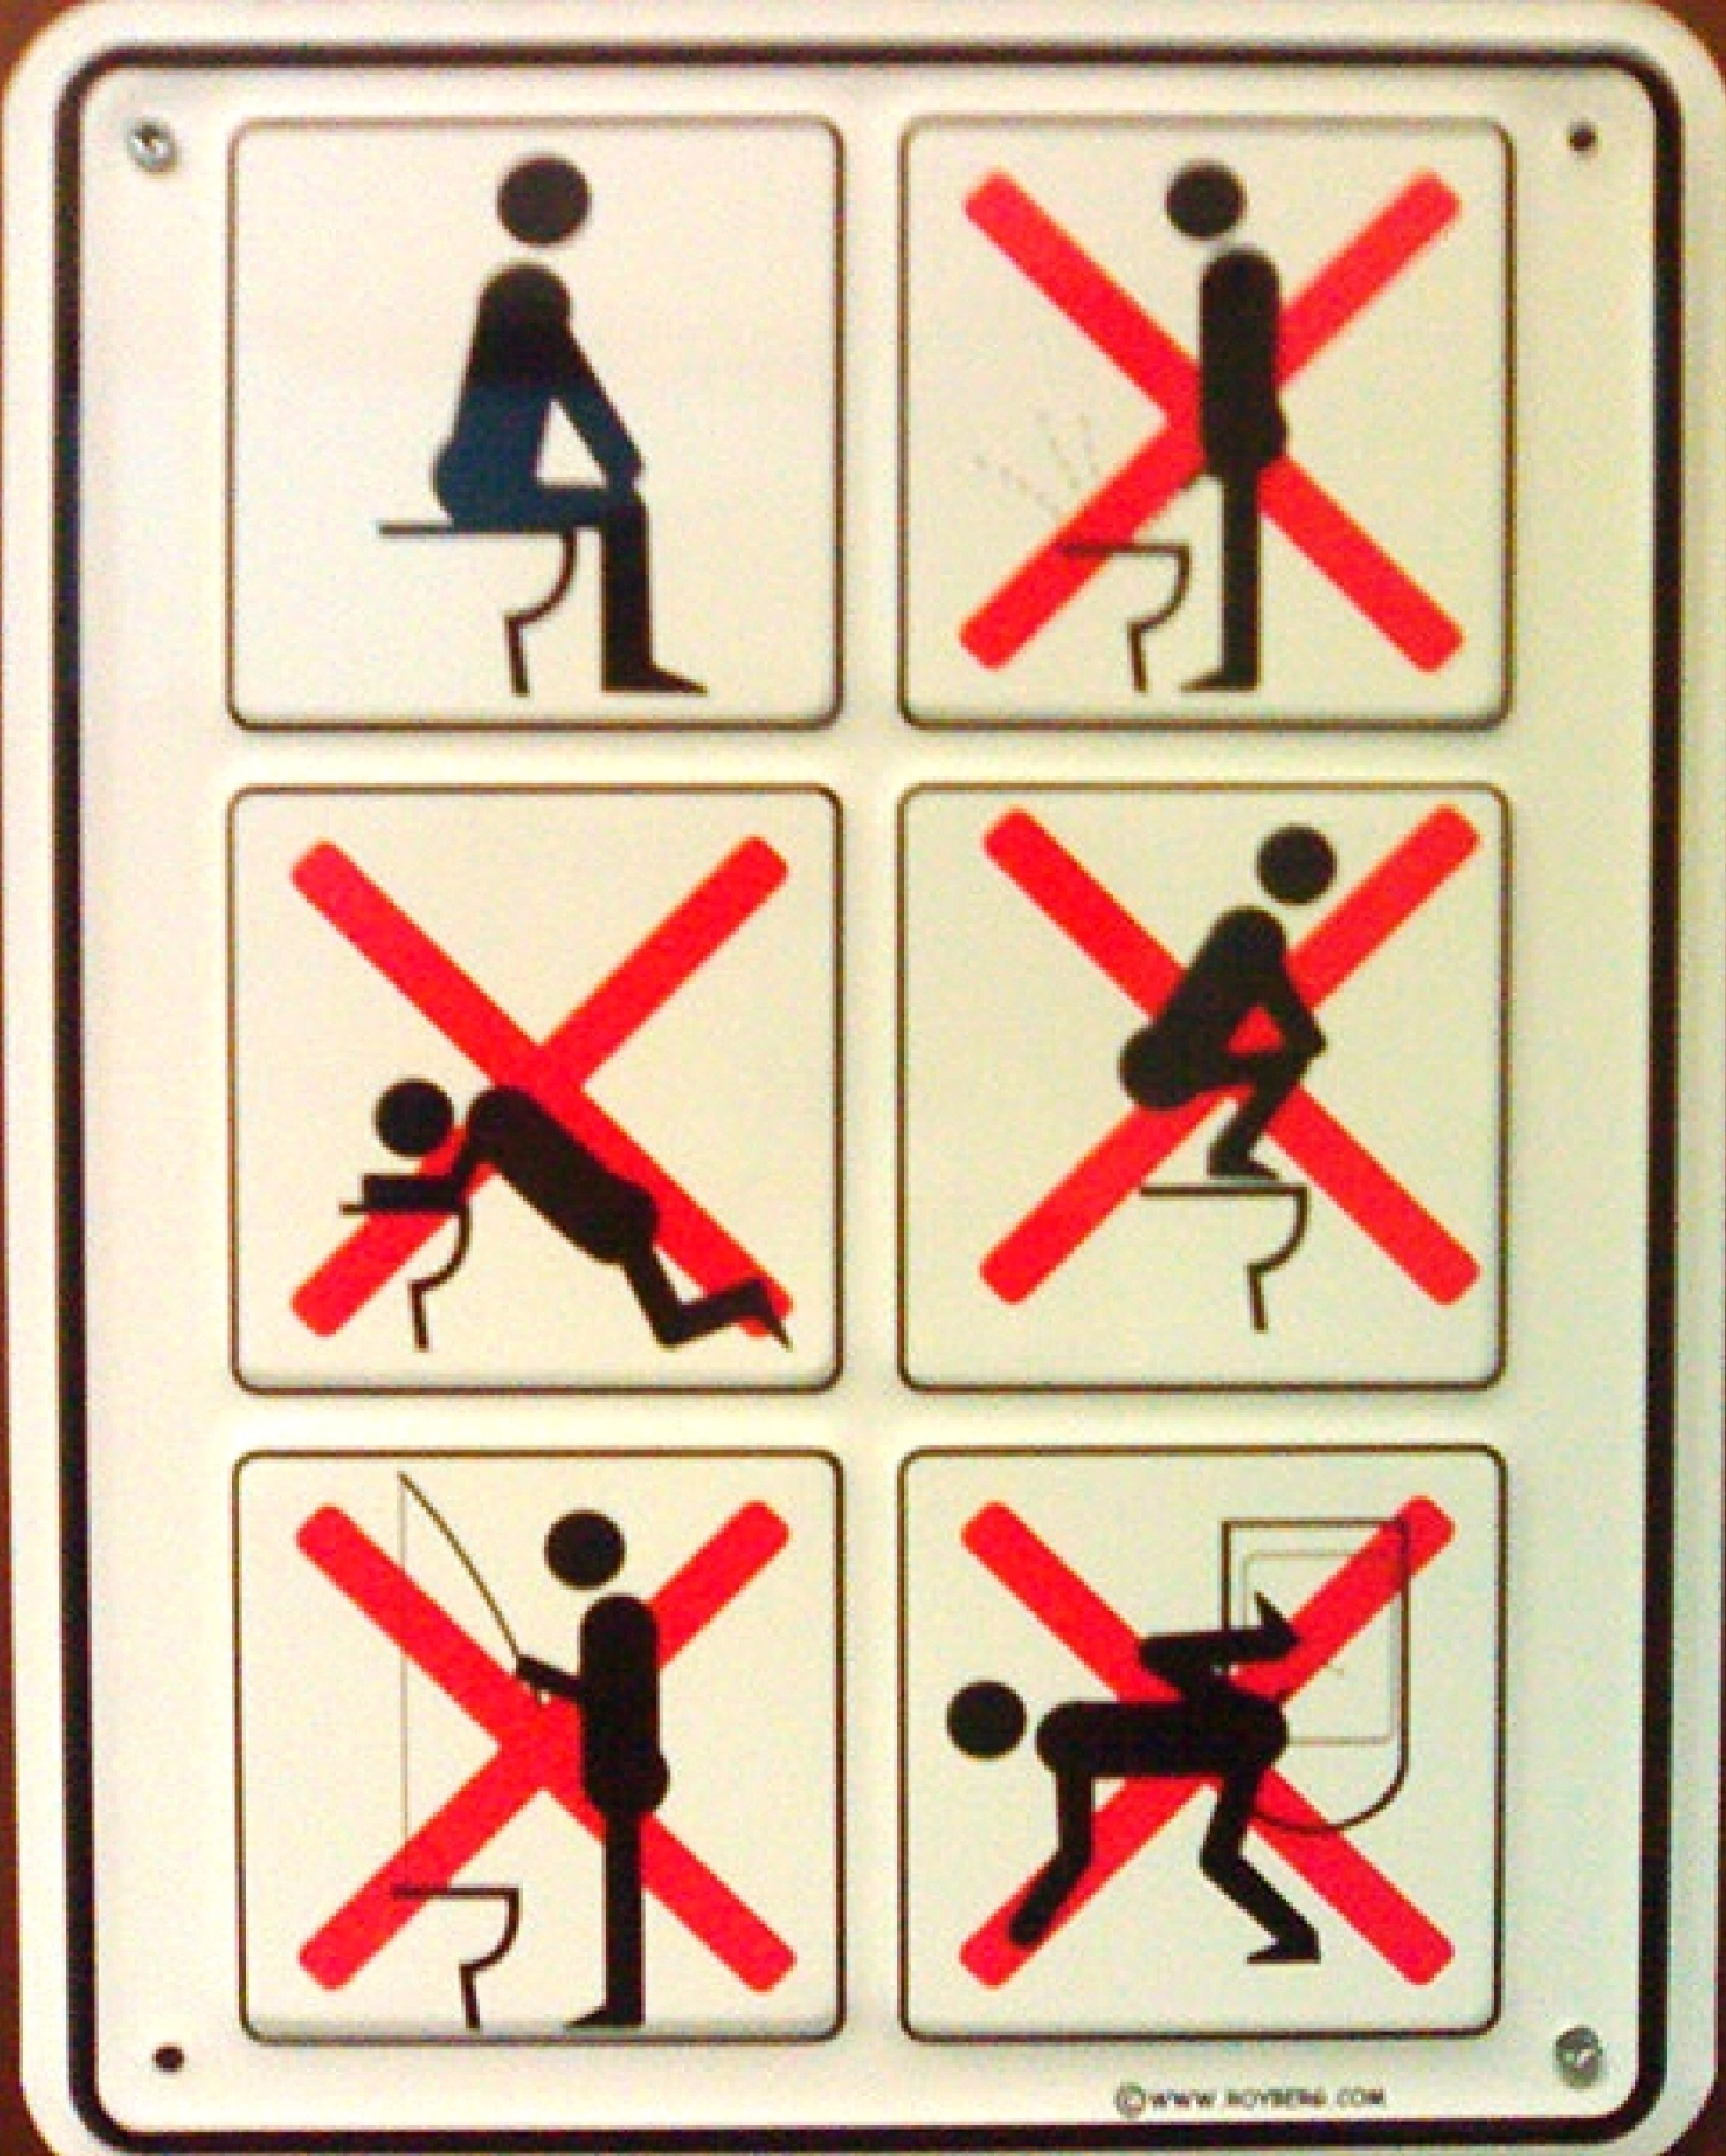 Toilet Rules (2).jpg